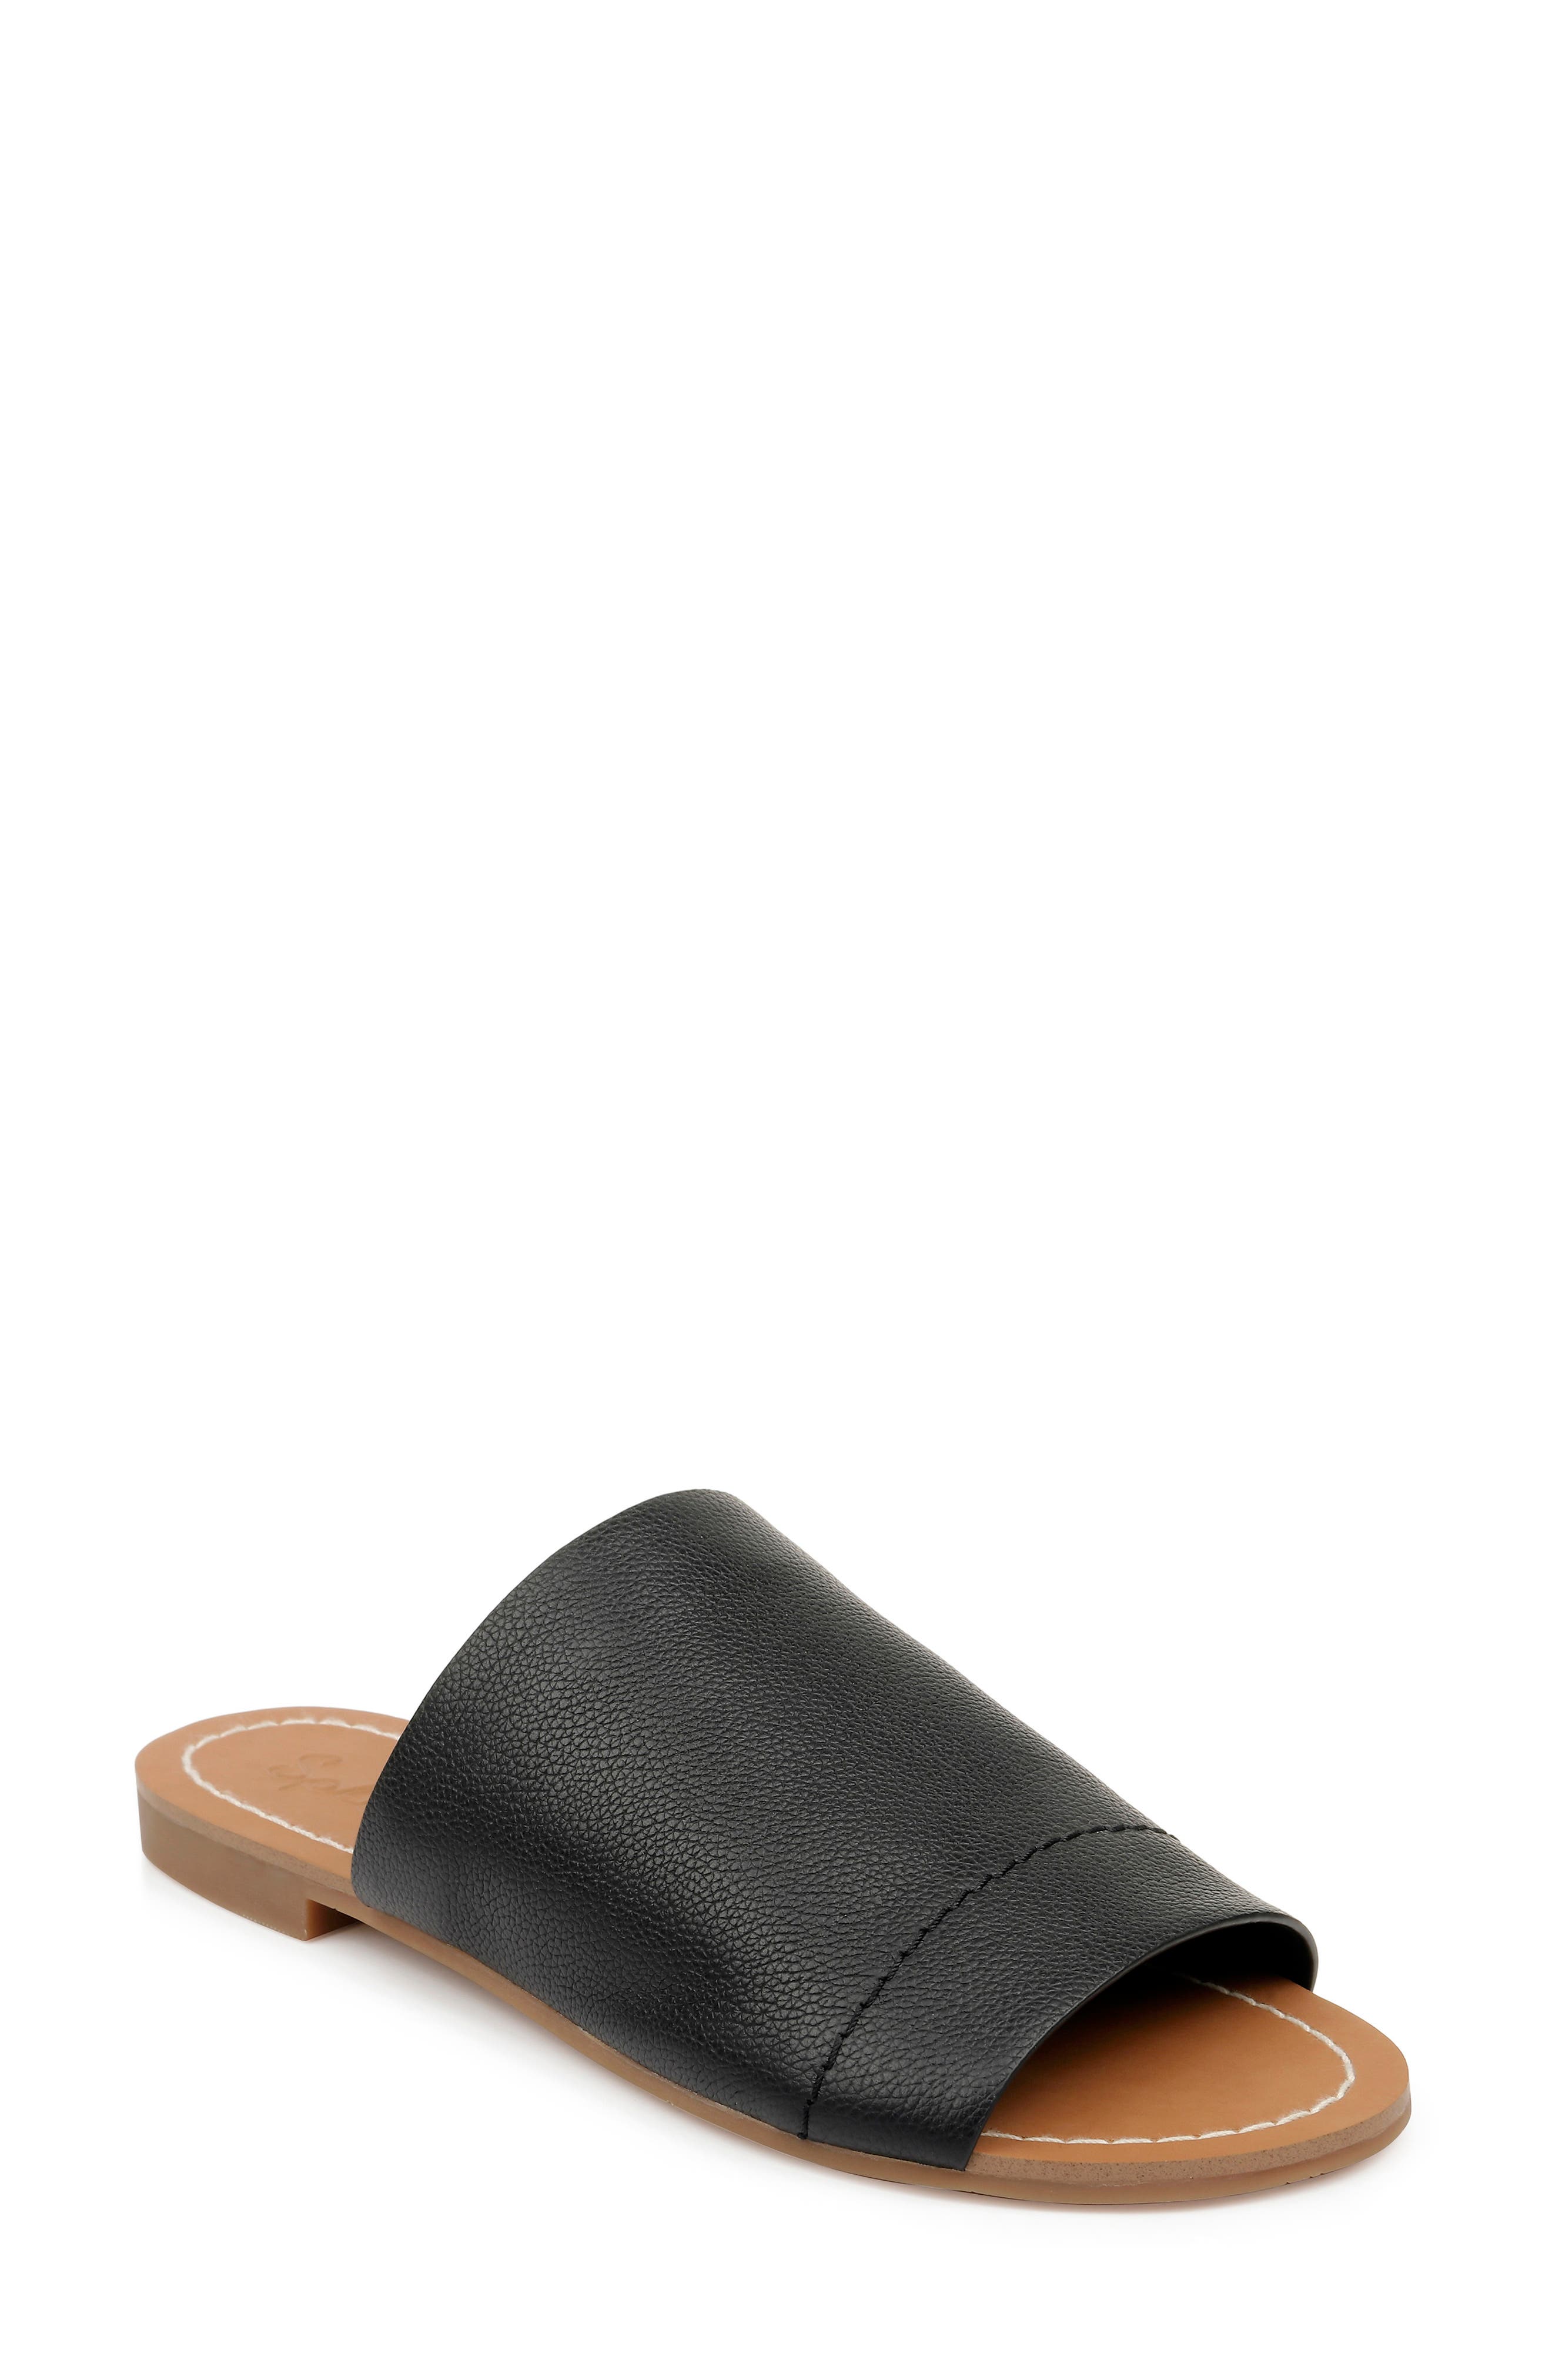 Splendid Mavis Slide Sandal In Black Leather